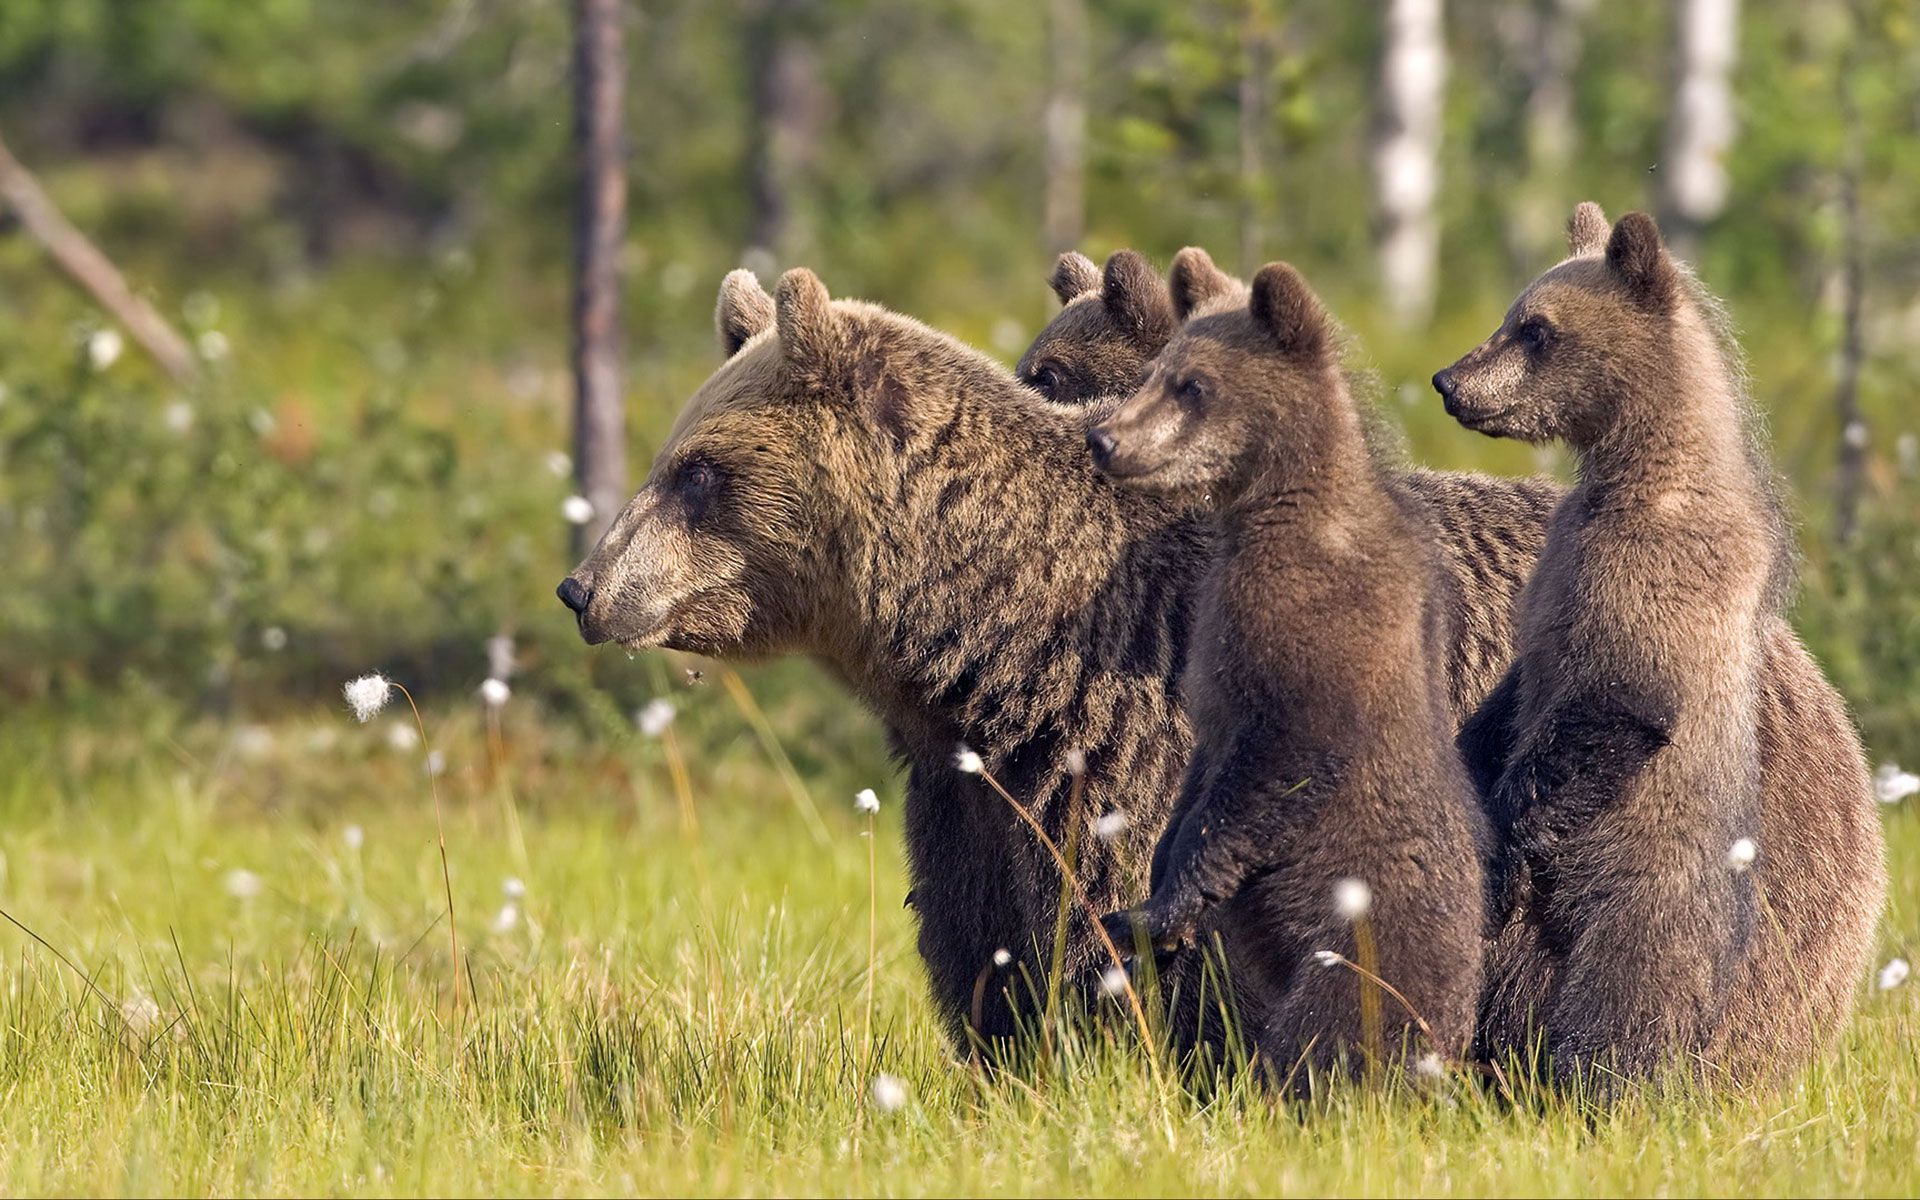 download gratuito di sfondi hd animali,orso bruno,orso grizzly,natura,animale terrestre,orso